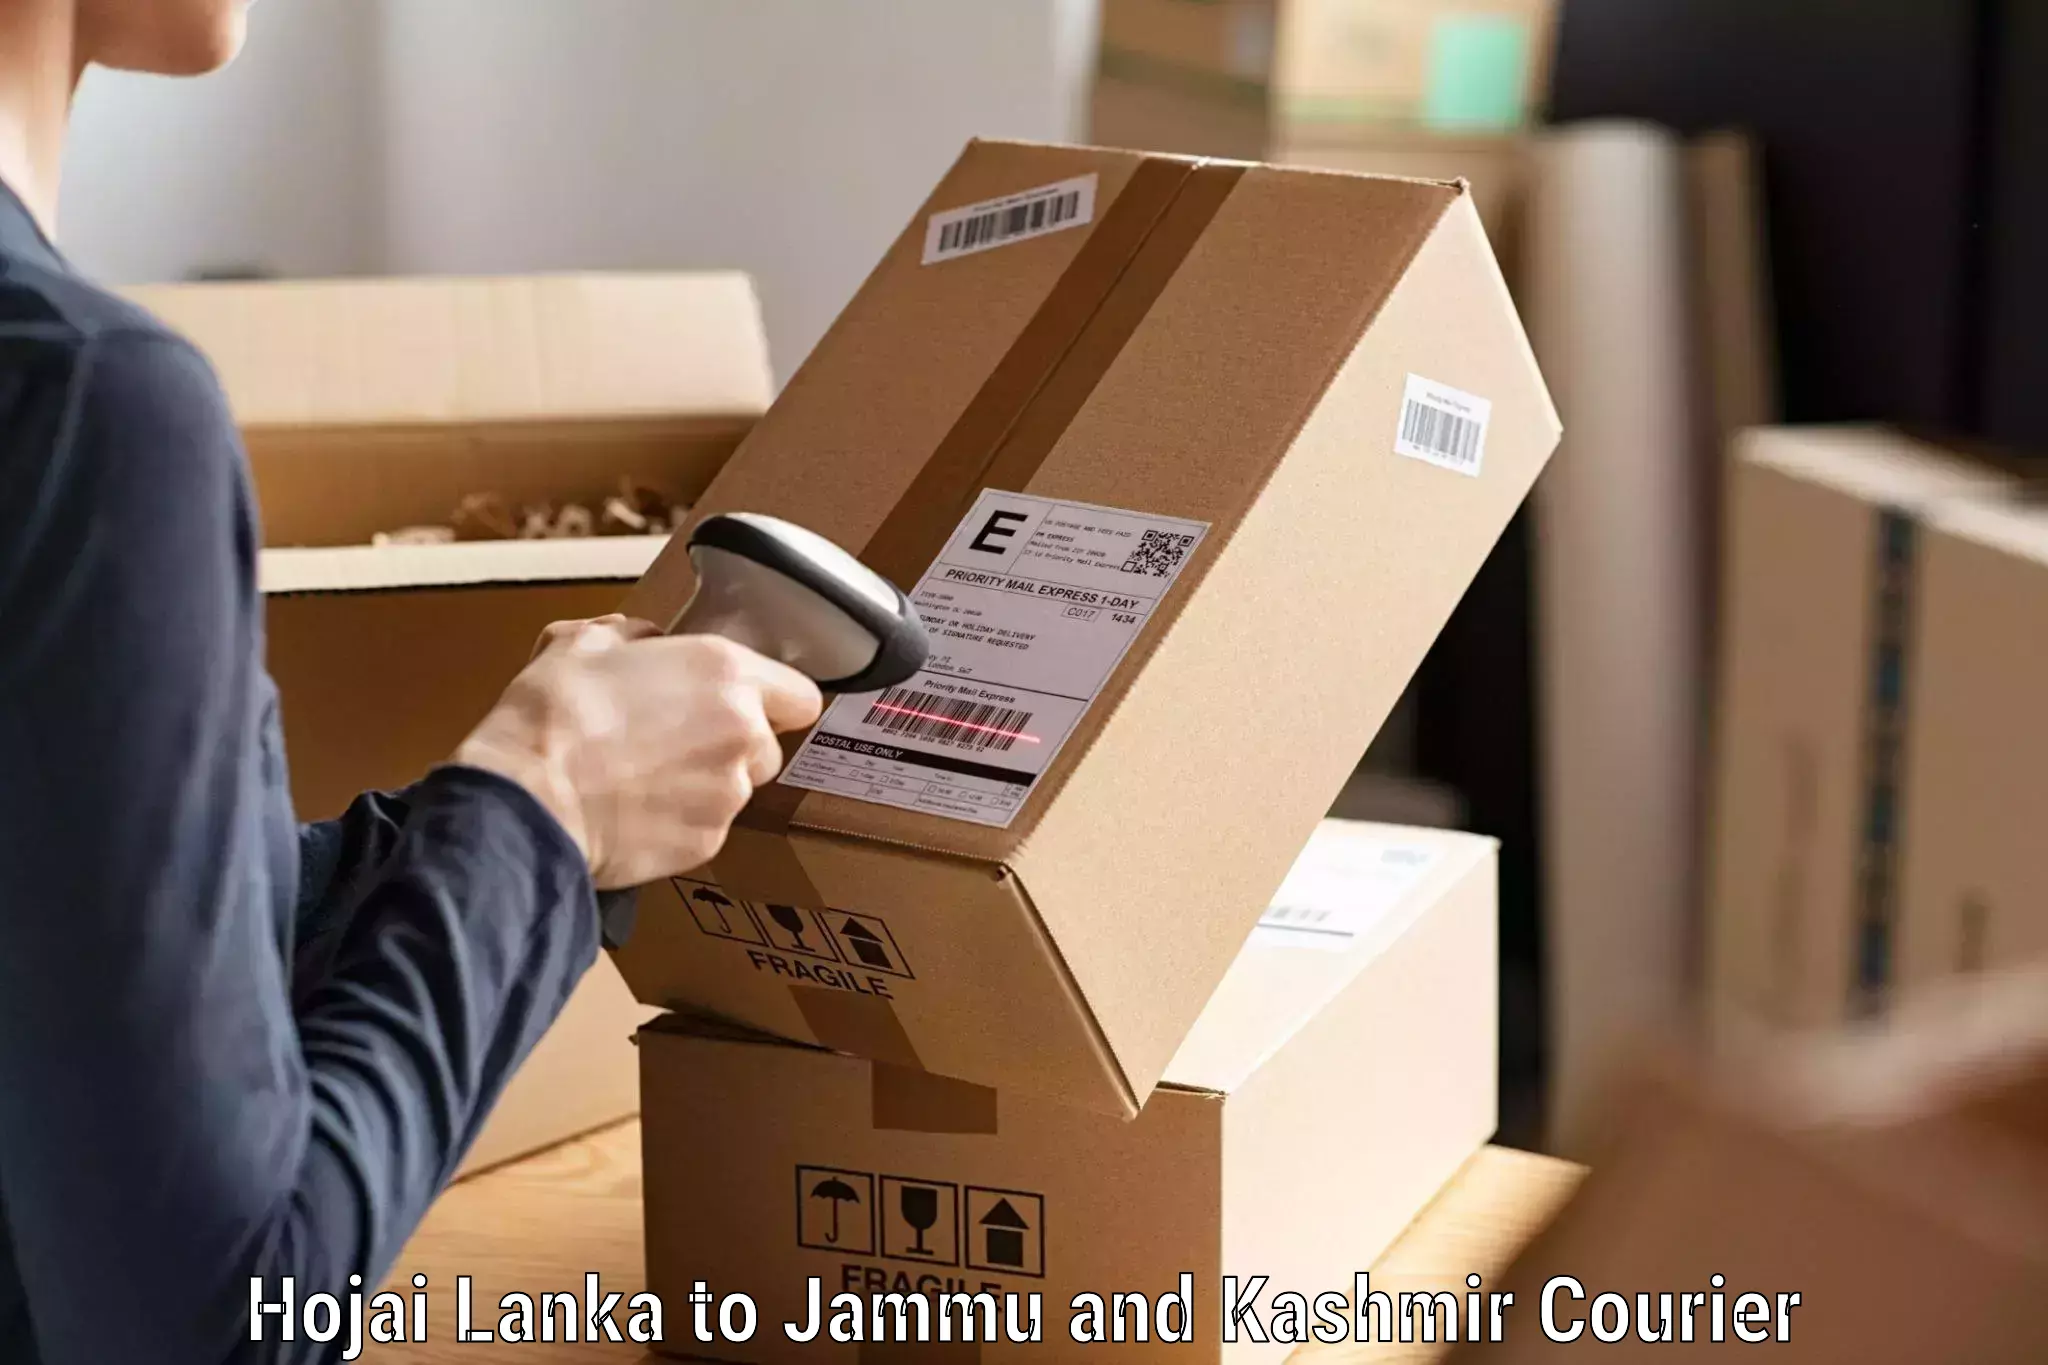 Smart parcel solutions in Hojai Lanka to Kulgam